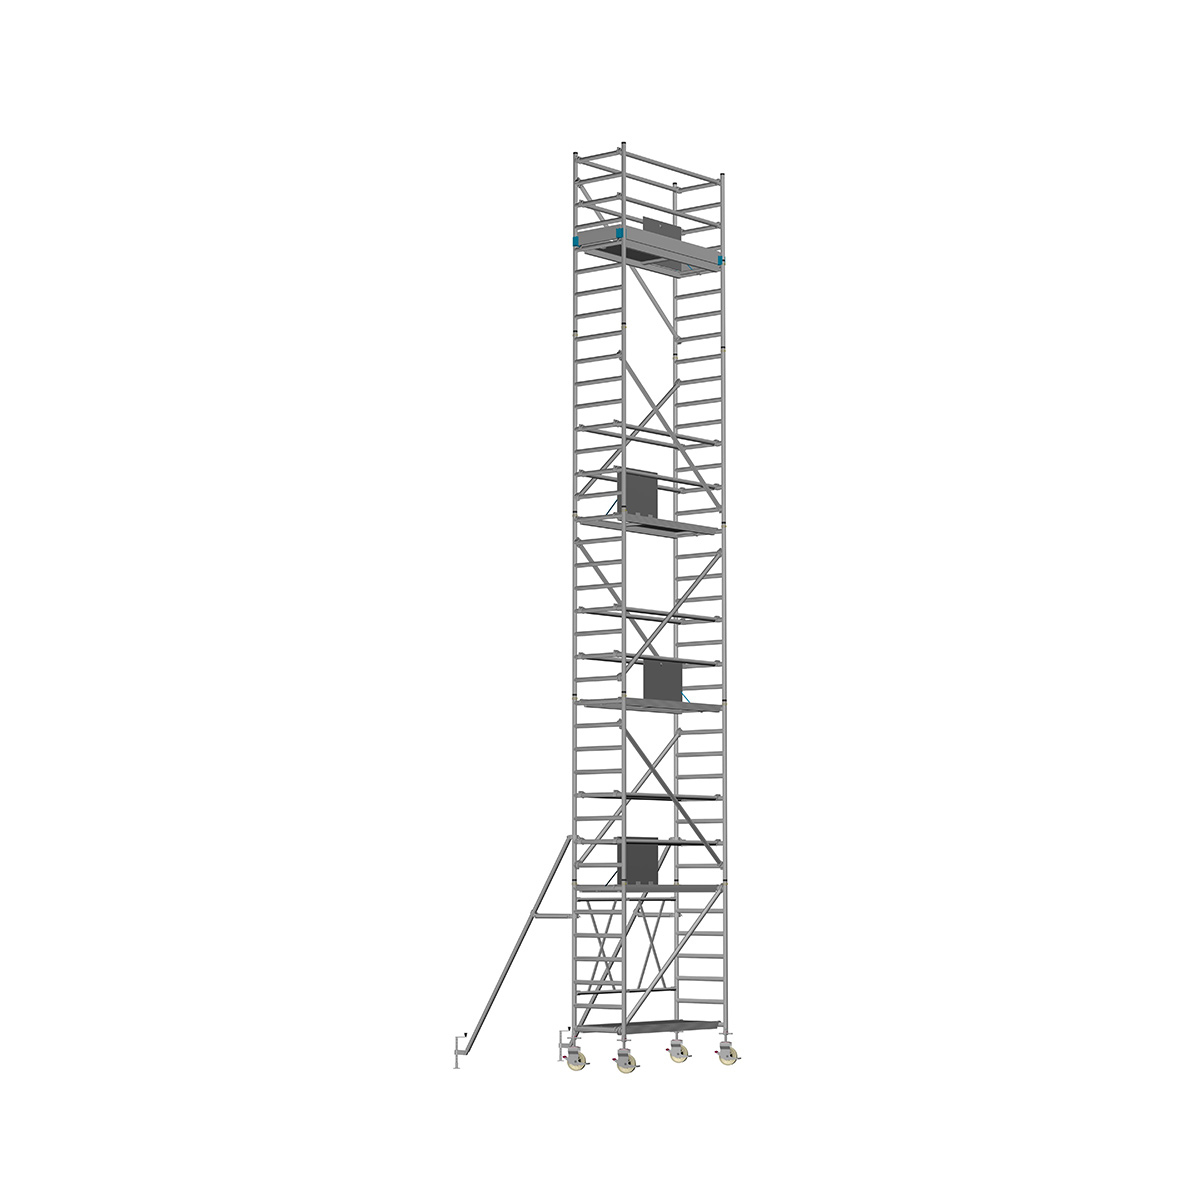 Chiemsee 1 SPEZIAL - Länge: 1,83 m - Breite: 0,74 m, Standhöhe 1,00 m